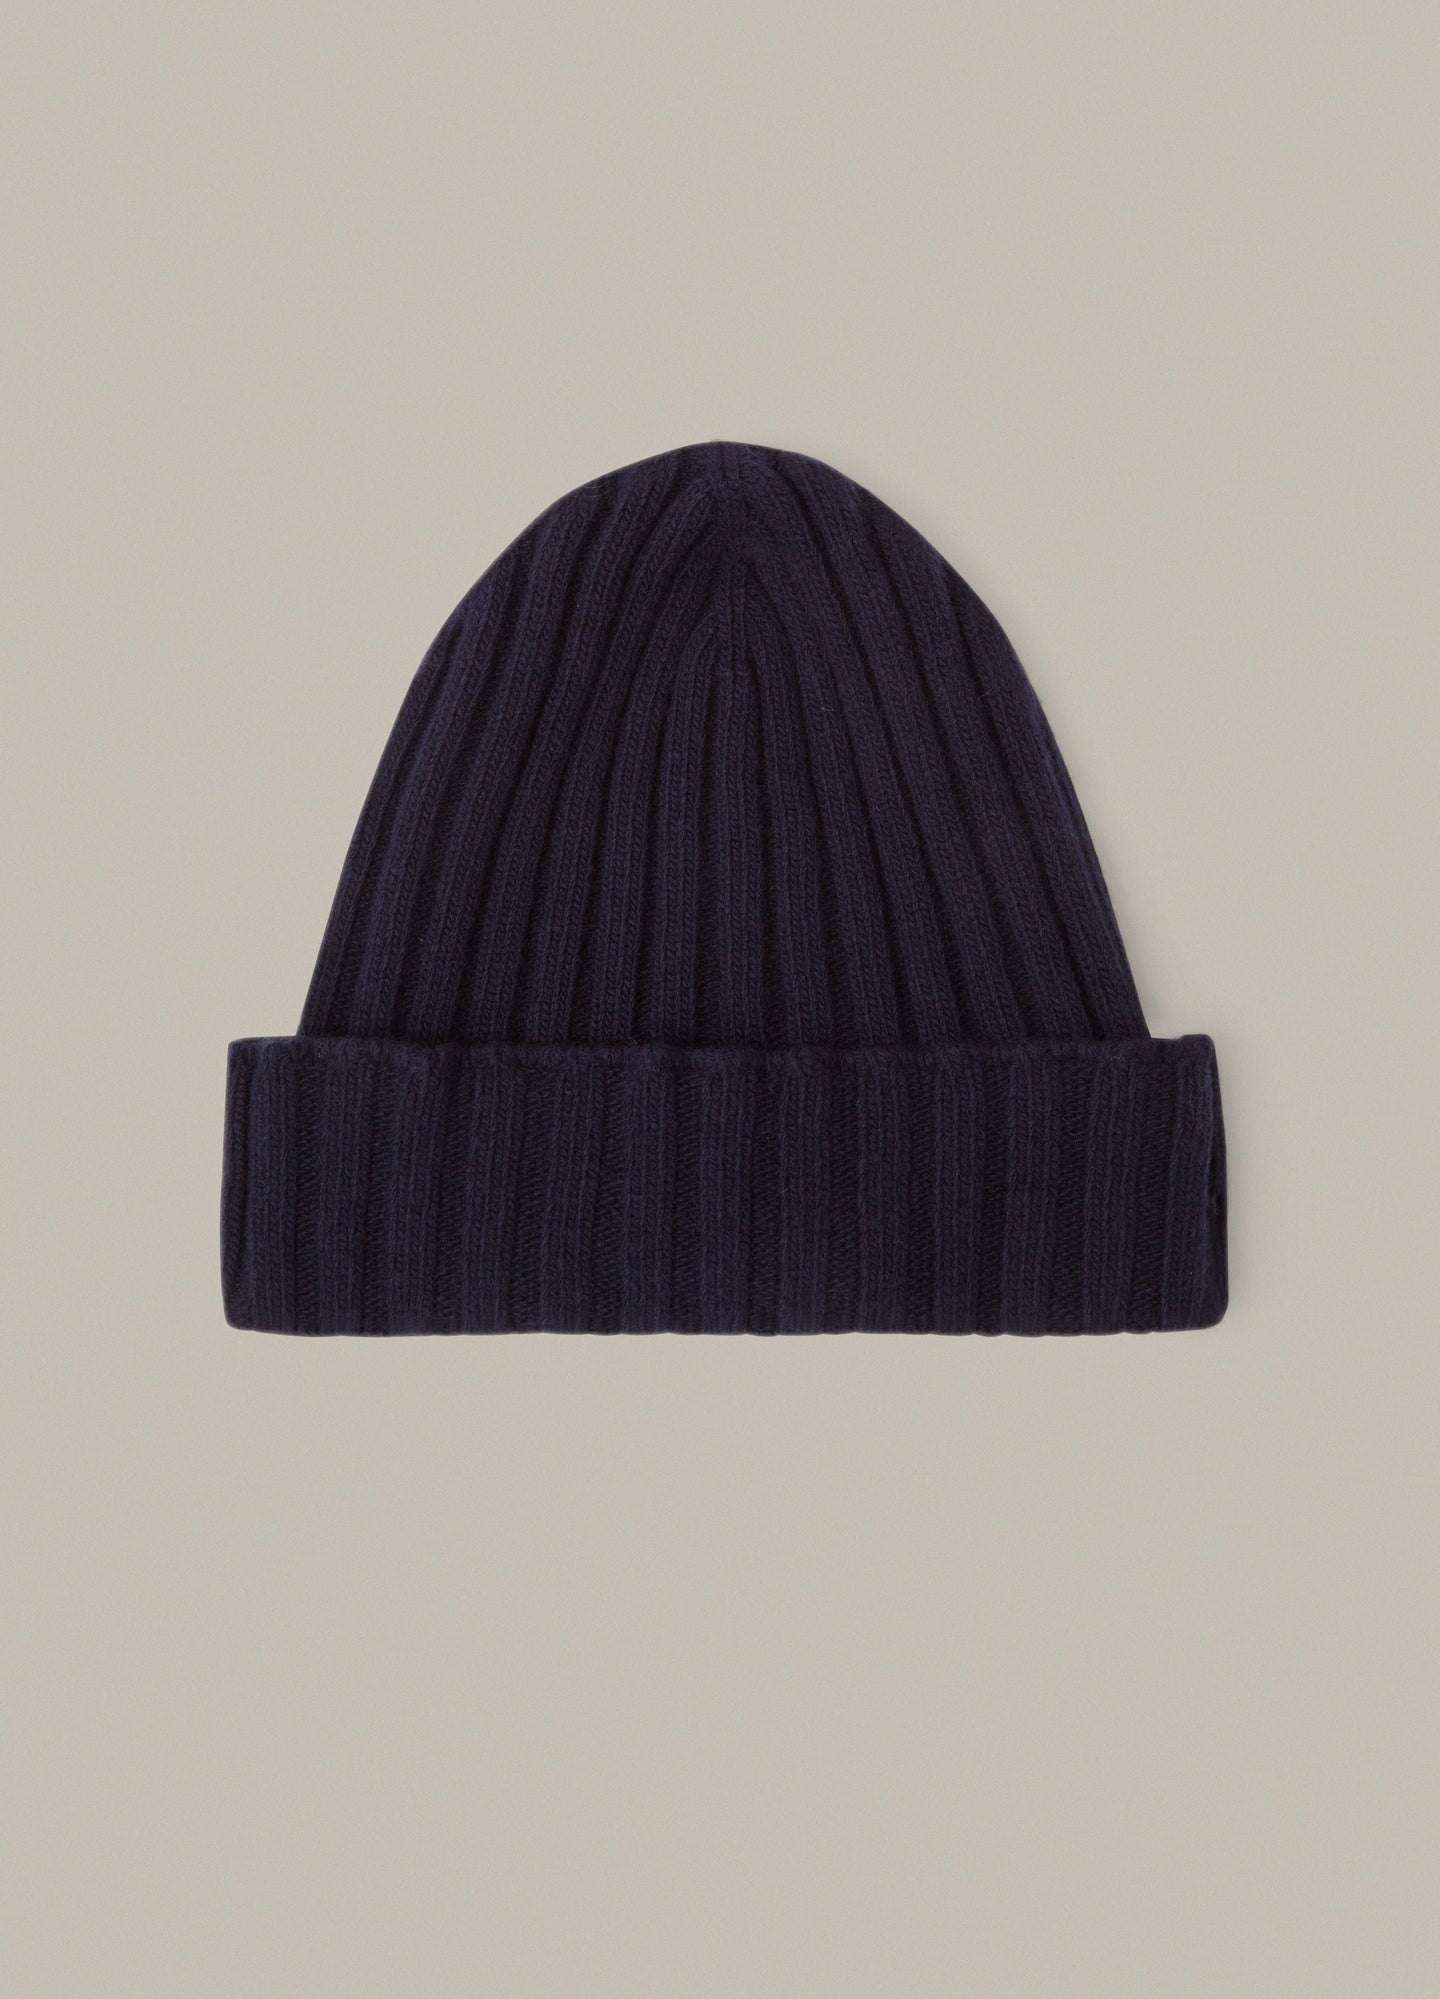 Merino/Cashmere Knit Hat - Navy Berg & Berg